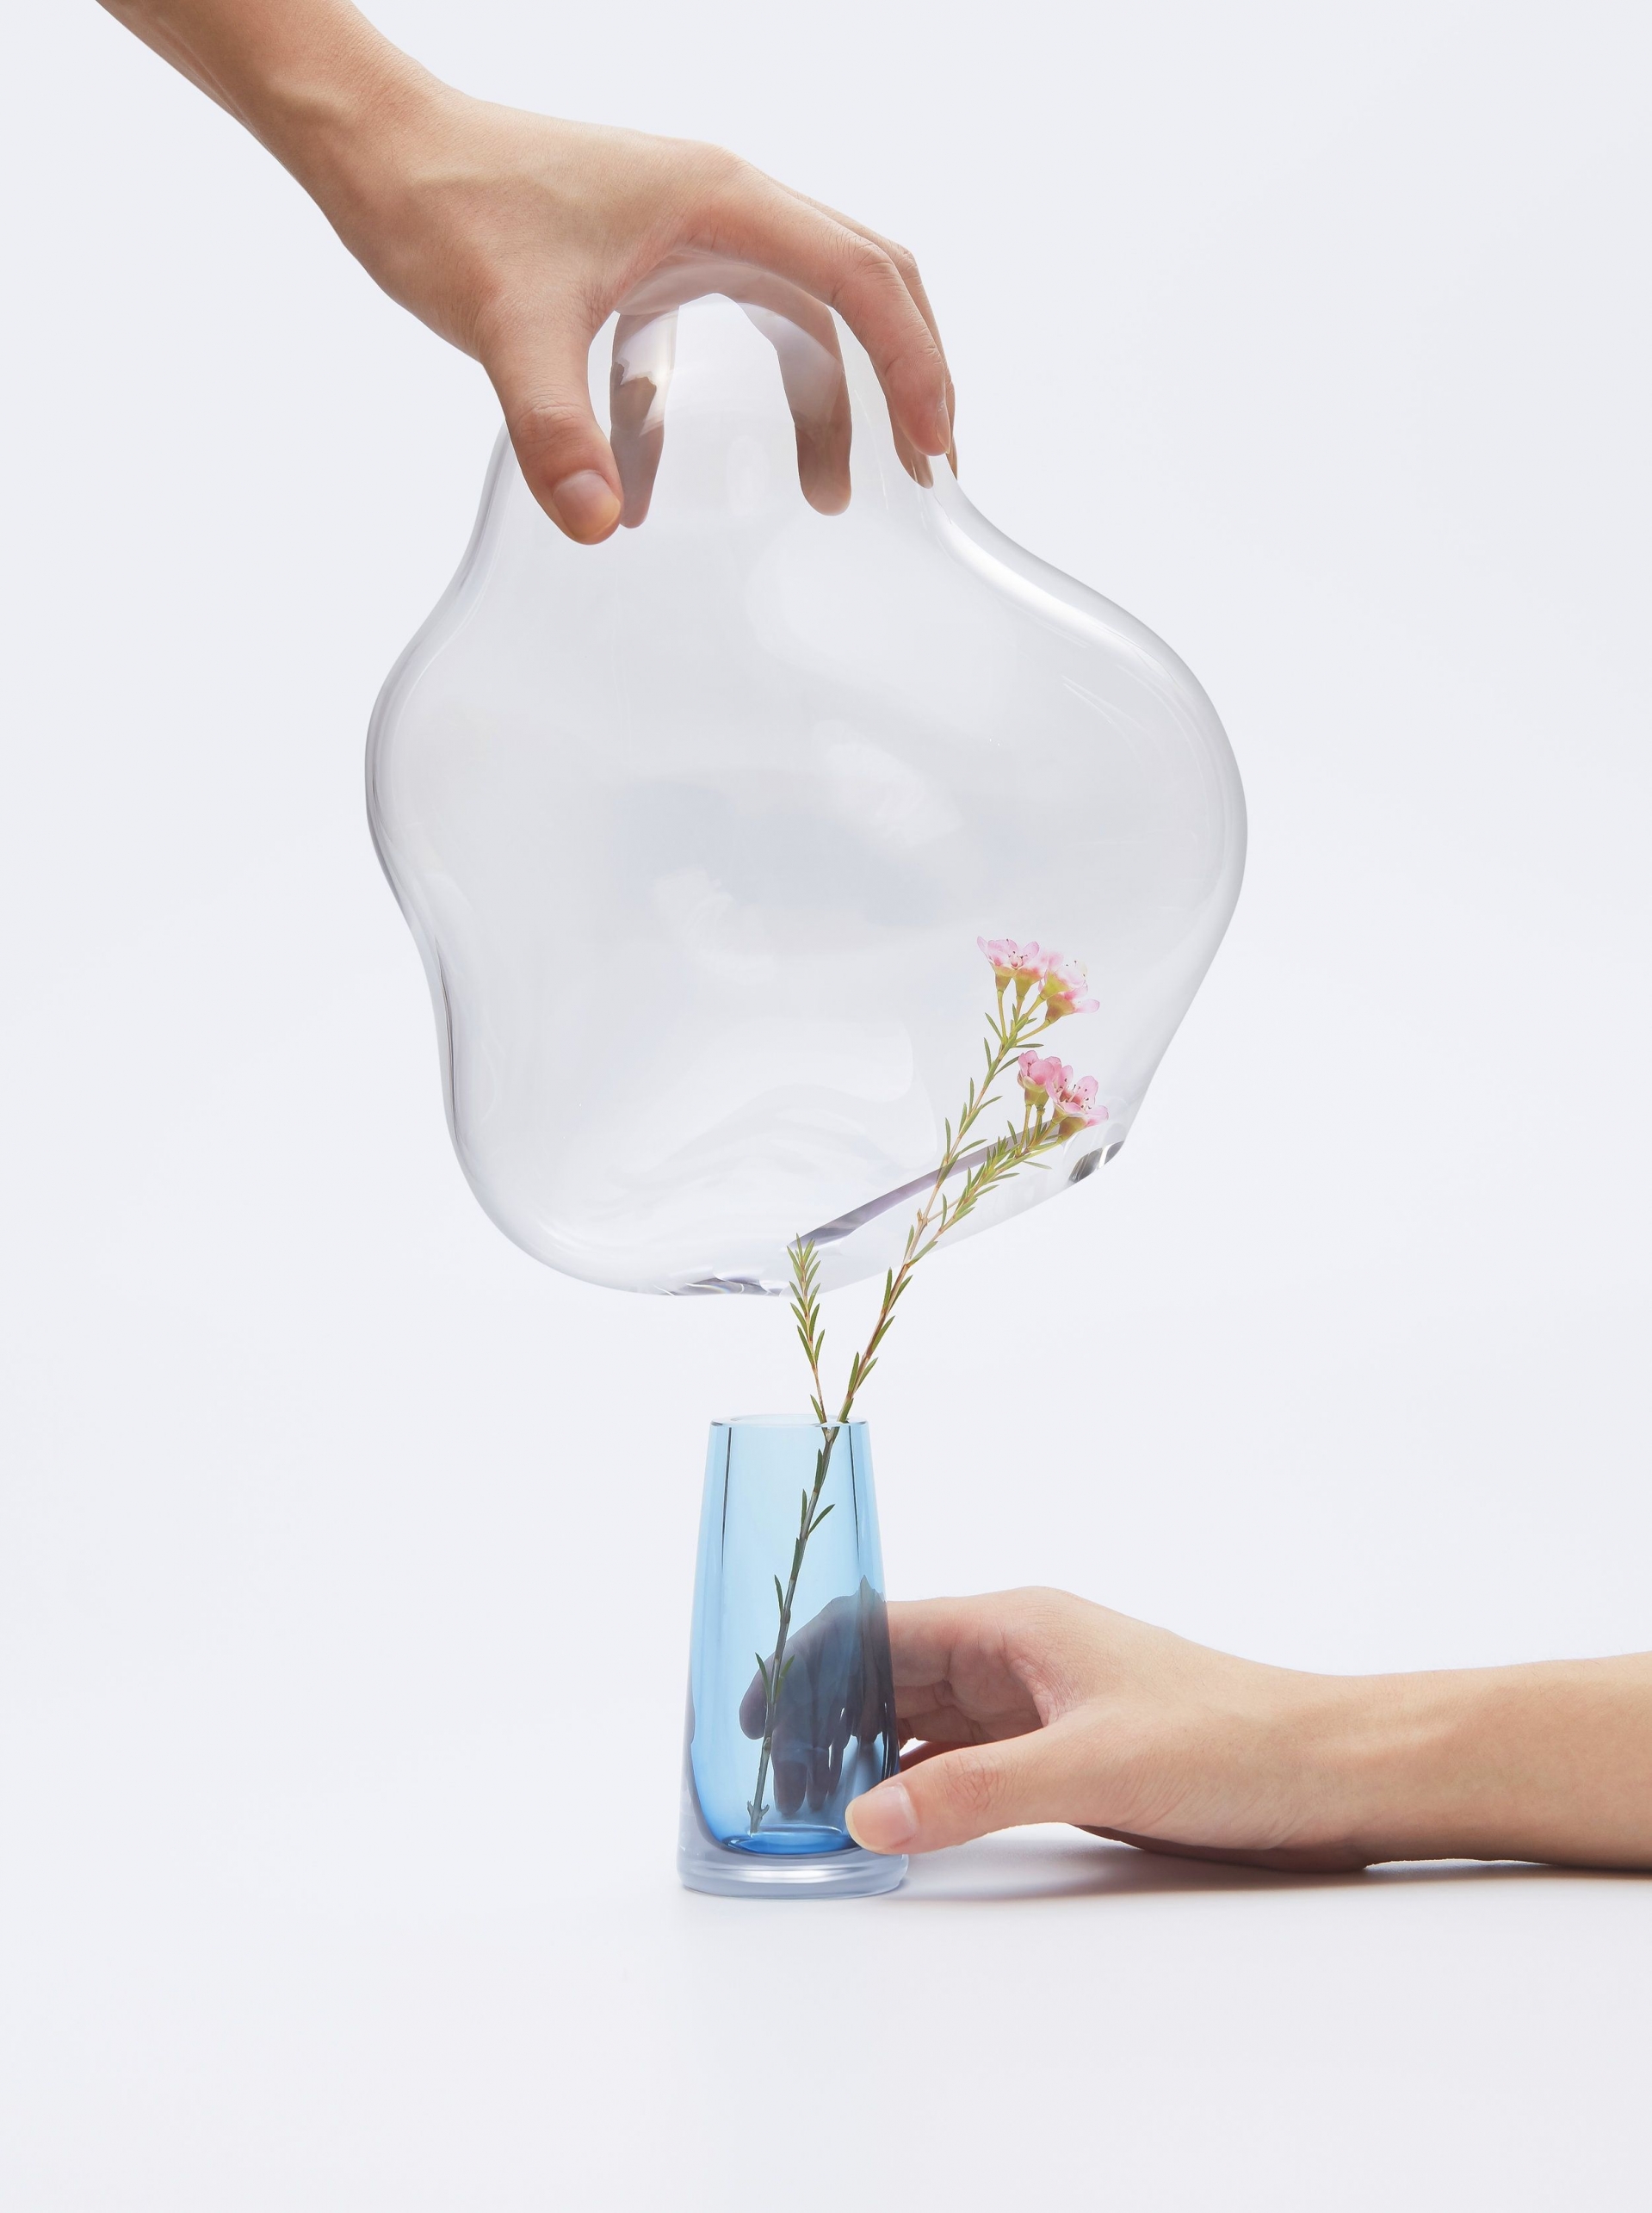 Bubble khuyến khích chúng ta cẩn thận đặt chiếc mũ thủy tinh lên bình để bảo vệ bông hoa bên trong nó.